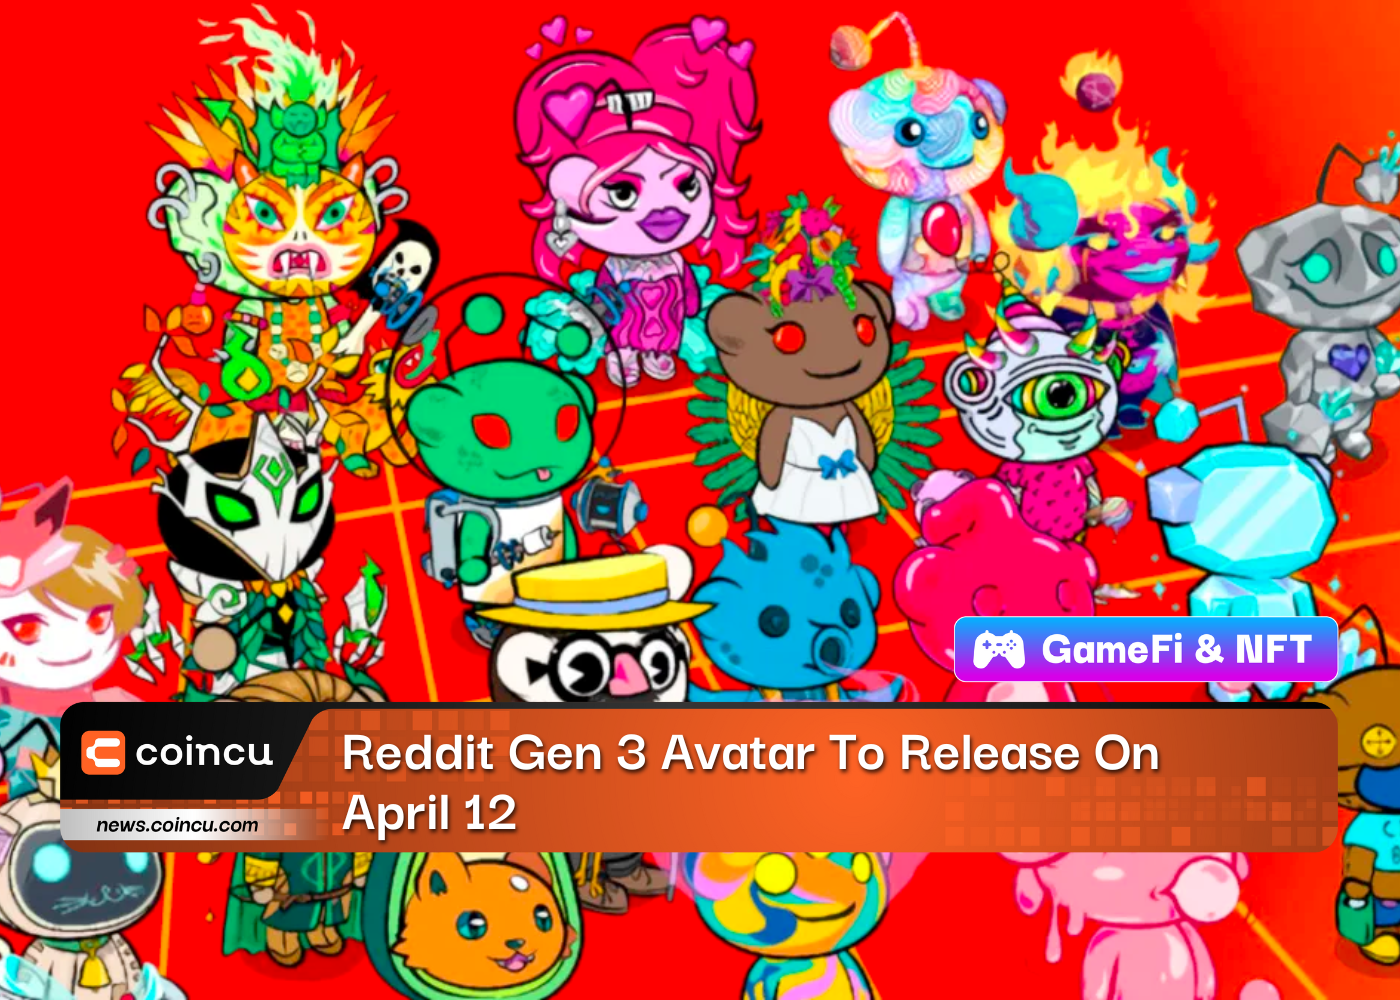 Аватар Reddit Gen 3 выйдет 12 апреля